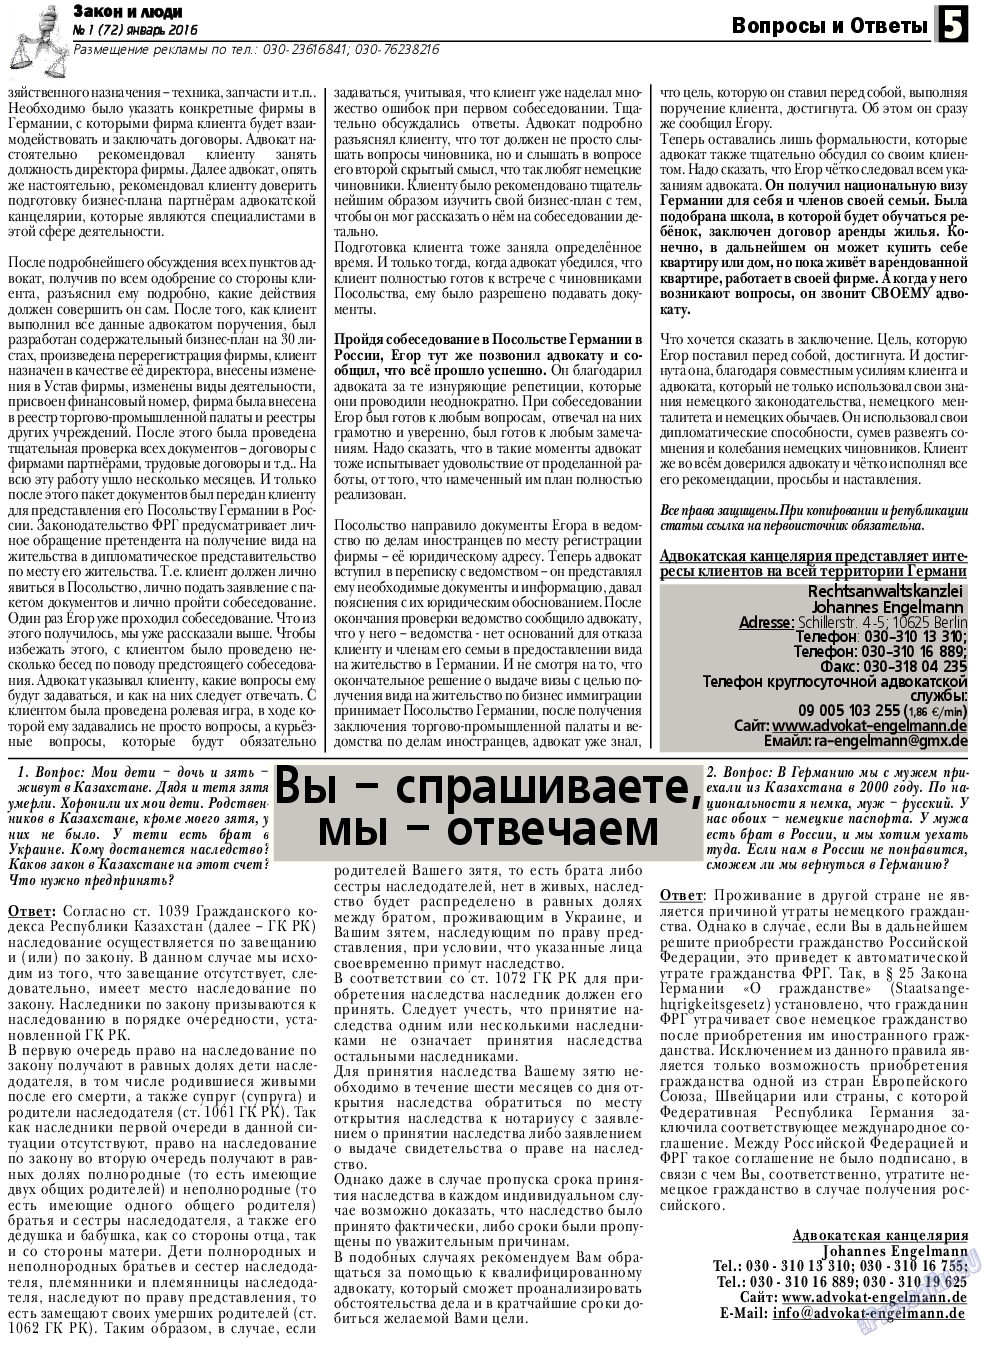 Закон и люди, газета. 2016 №1 стр.5